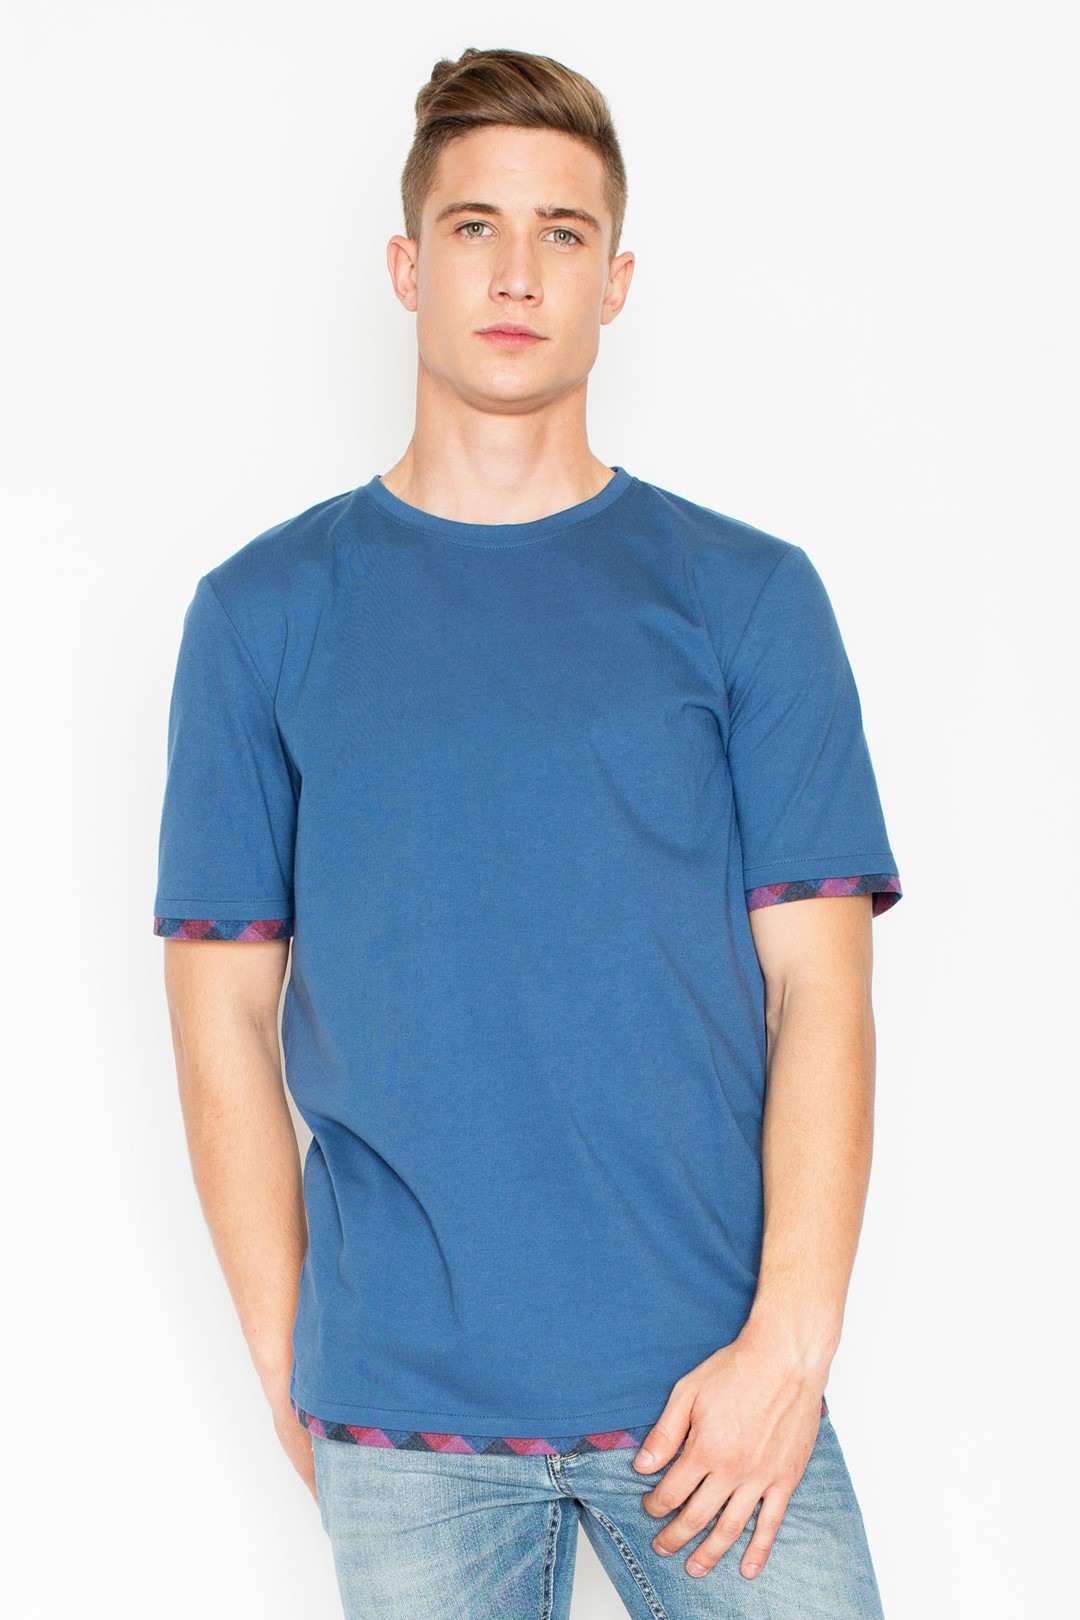 T-shirt V032 Blue XL